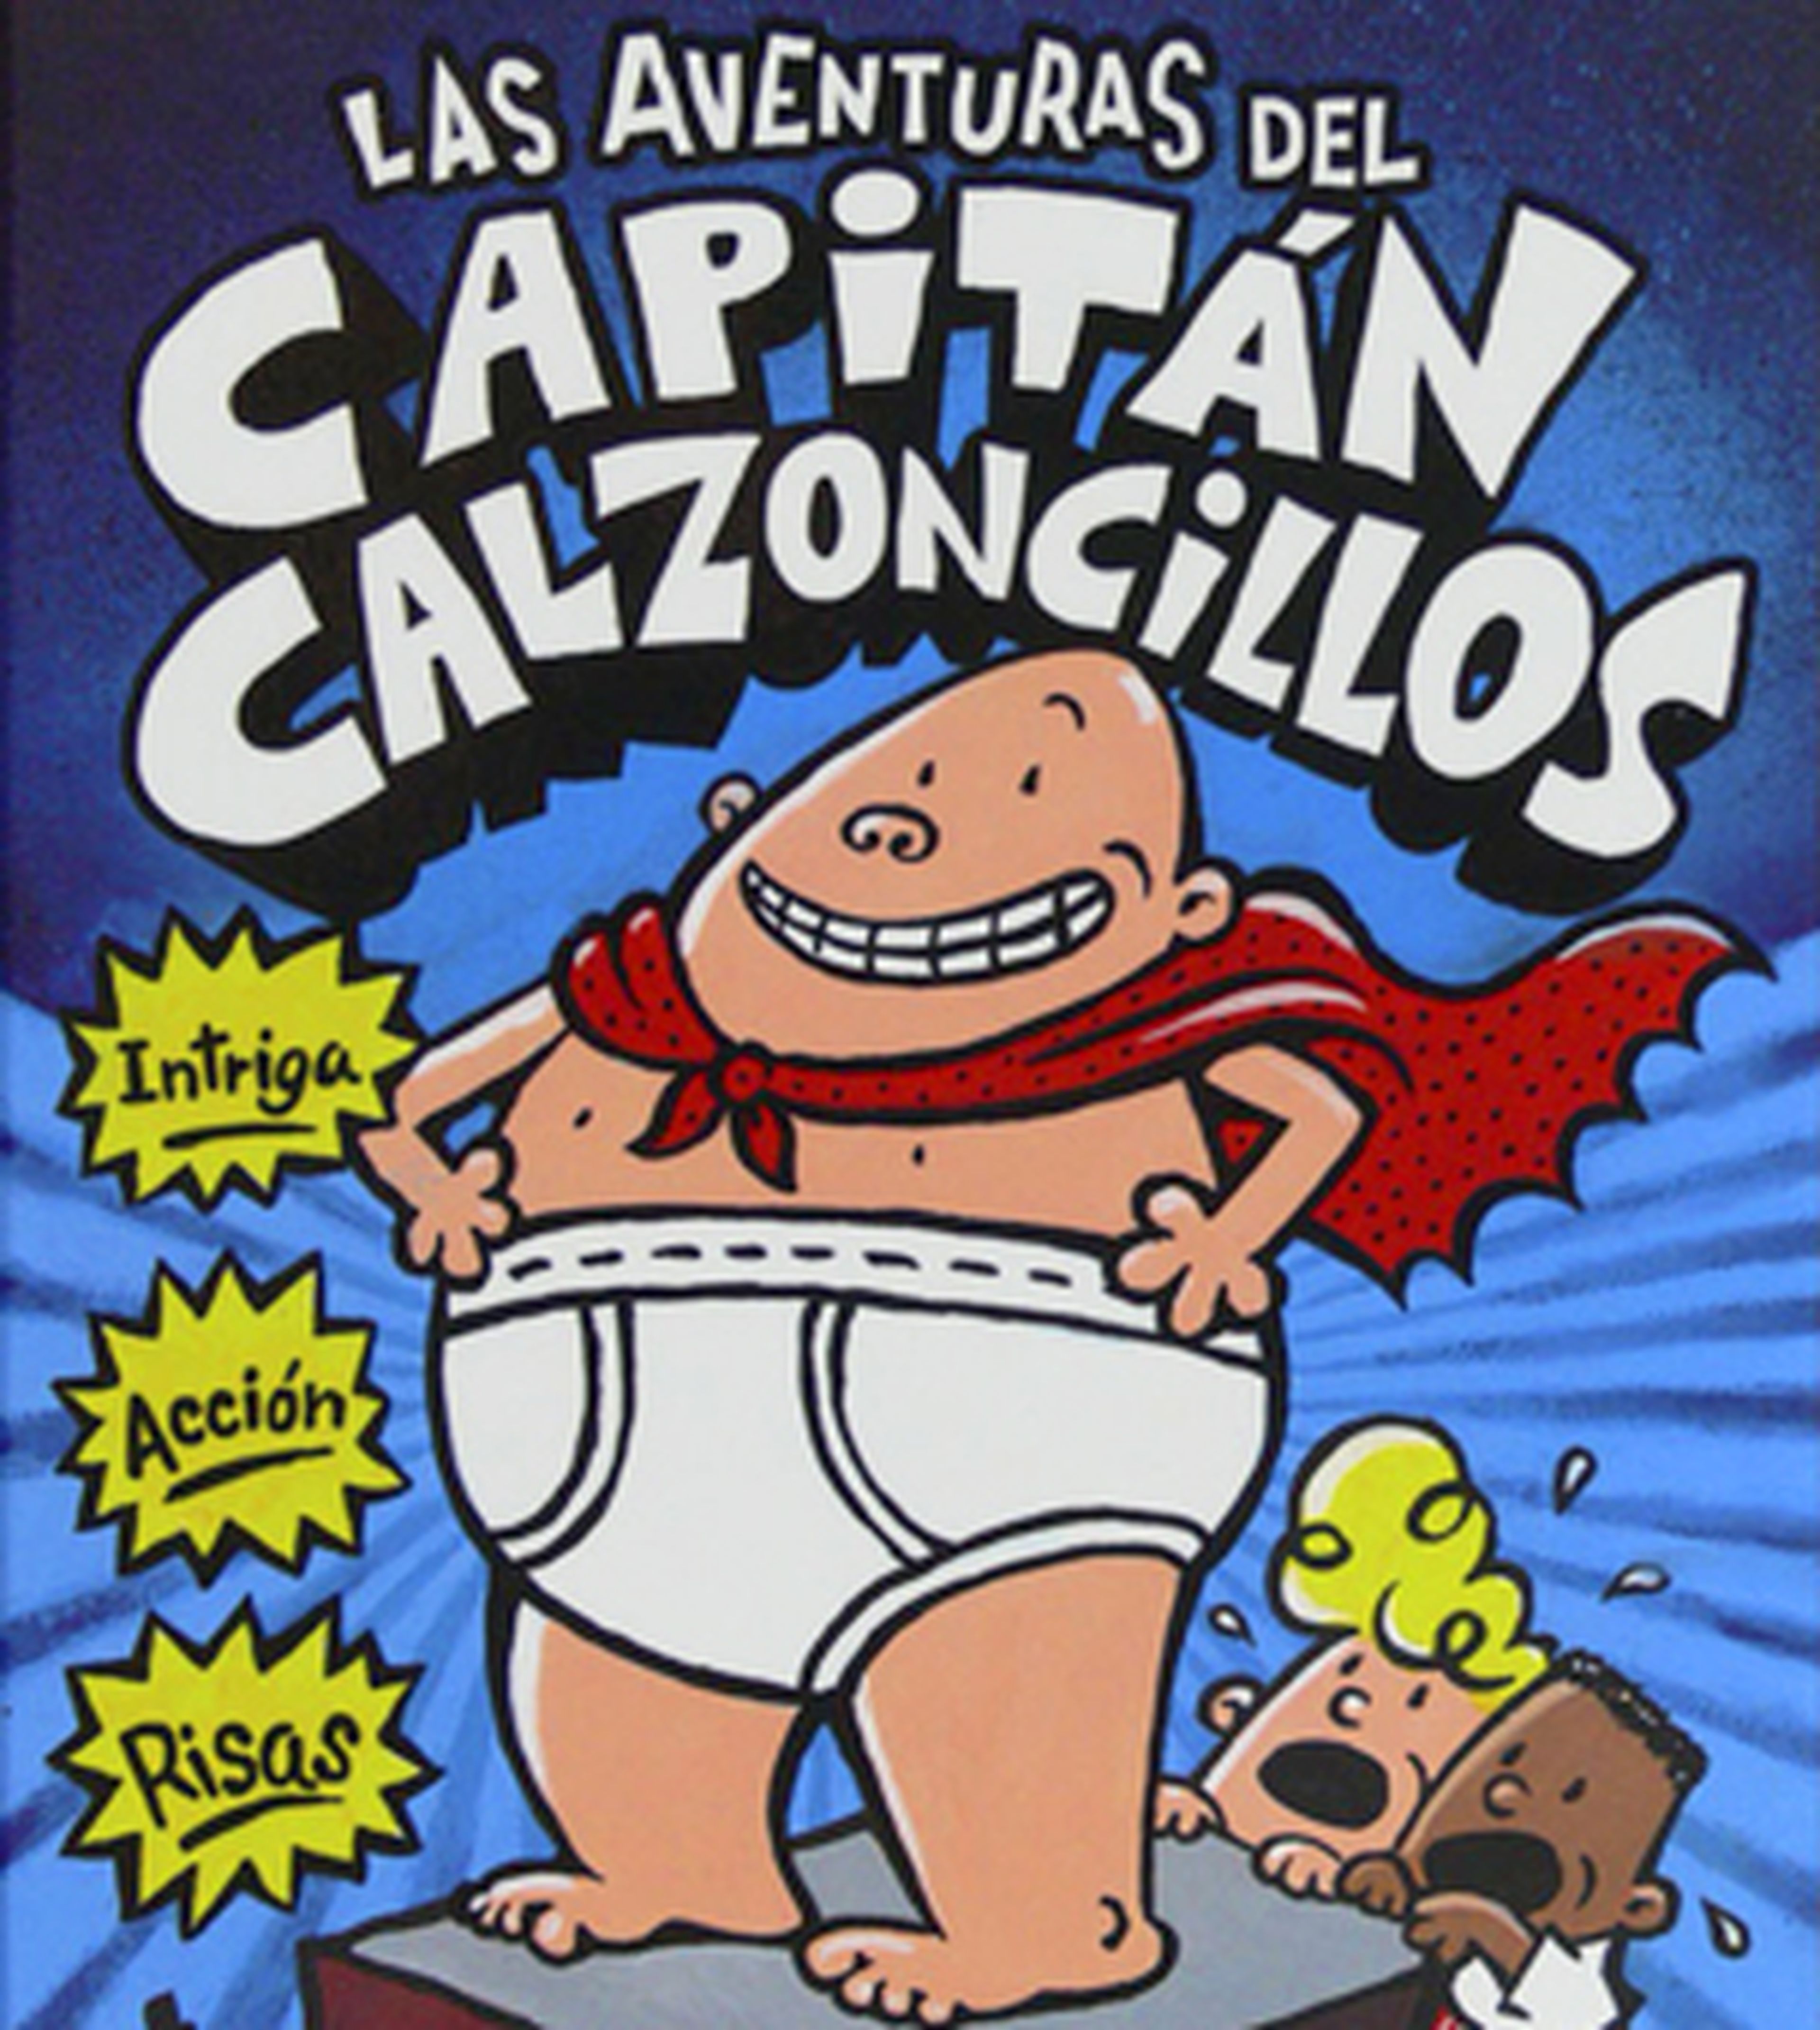 El Capitán Calzoncillos tendrá su propia peli